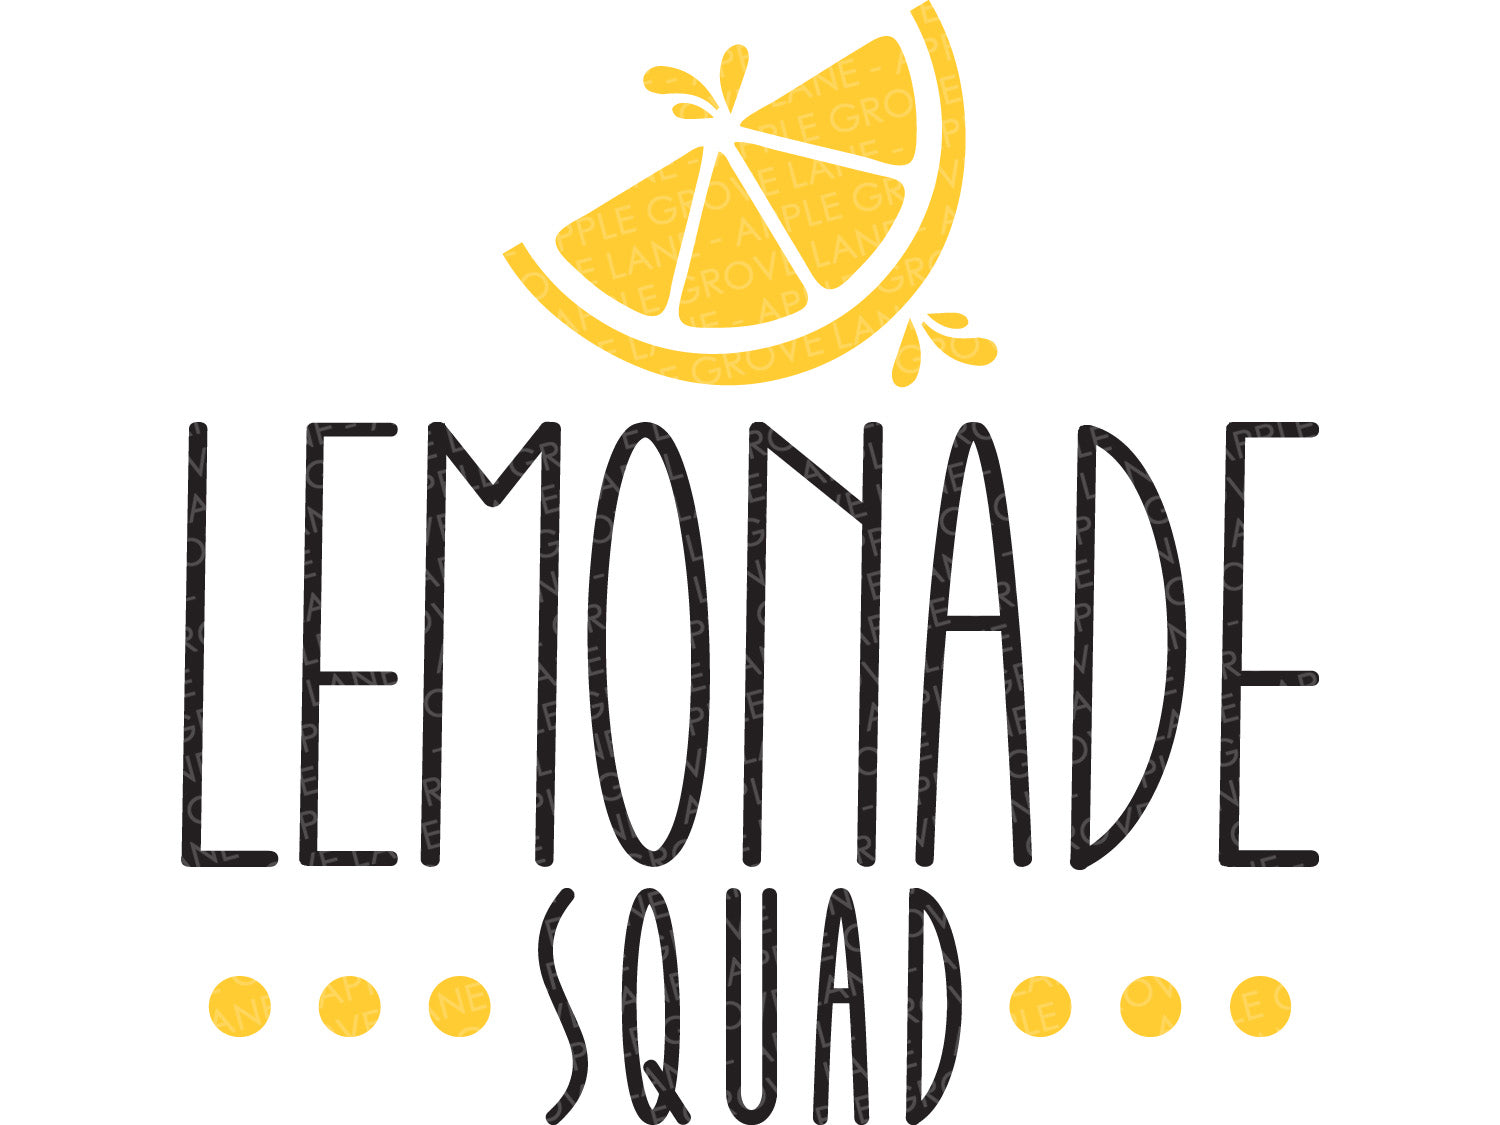 Download Lemonade Squad Svg Lemons Svg Lemonade Stand Svg Summer Svg Le Apple Grove Lane